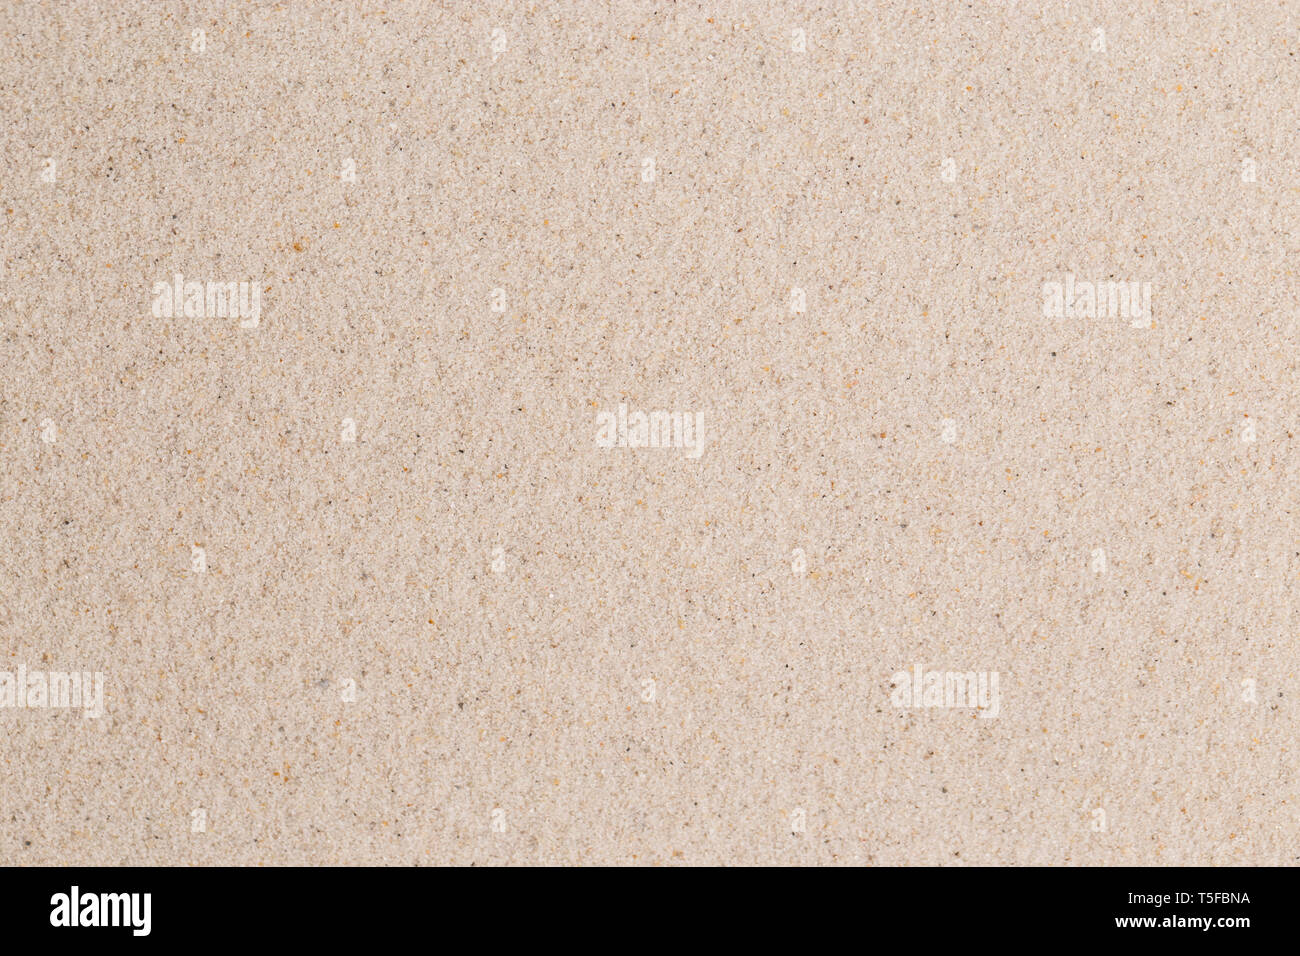 Les grains de sable jaune, l'arrière-plan, macro, Close up Banque D'Images